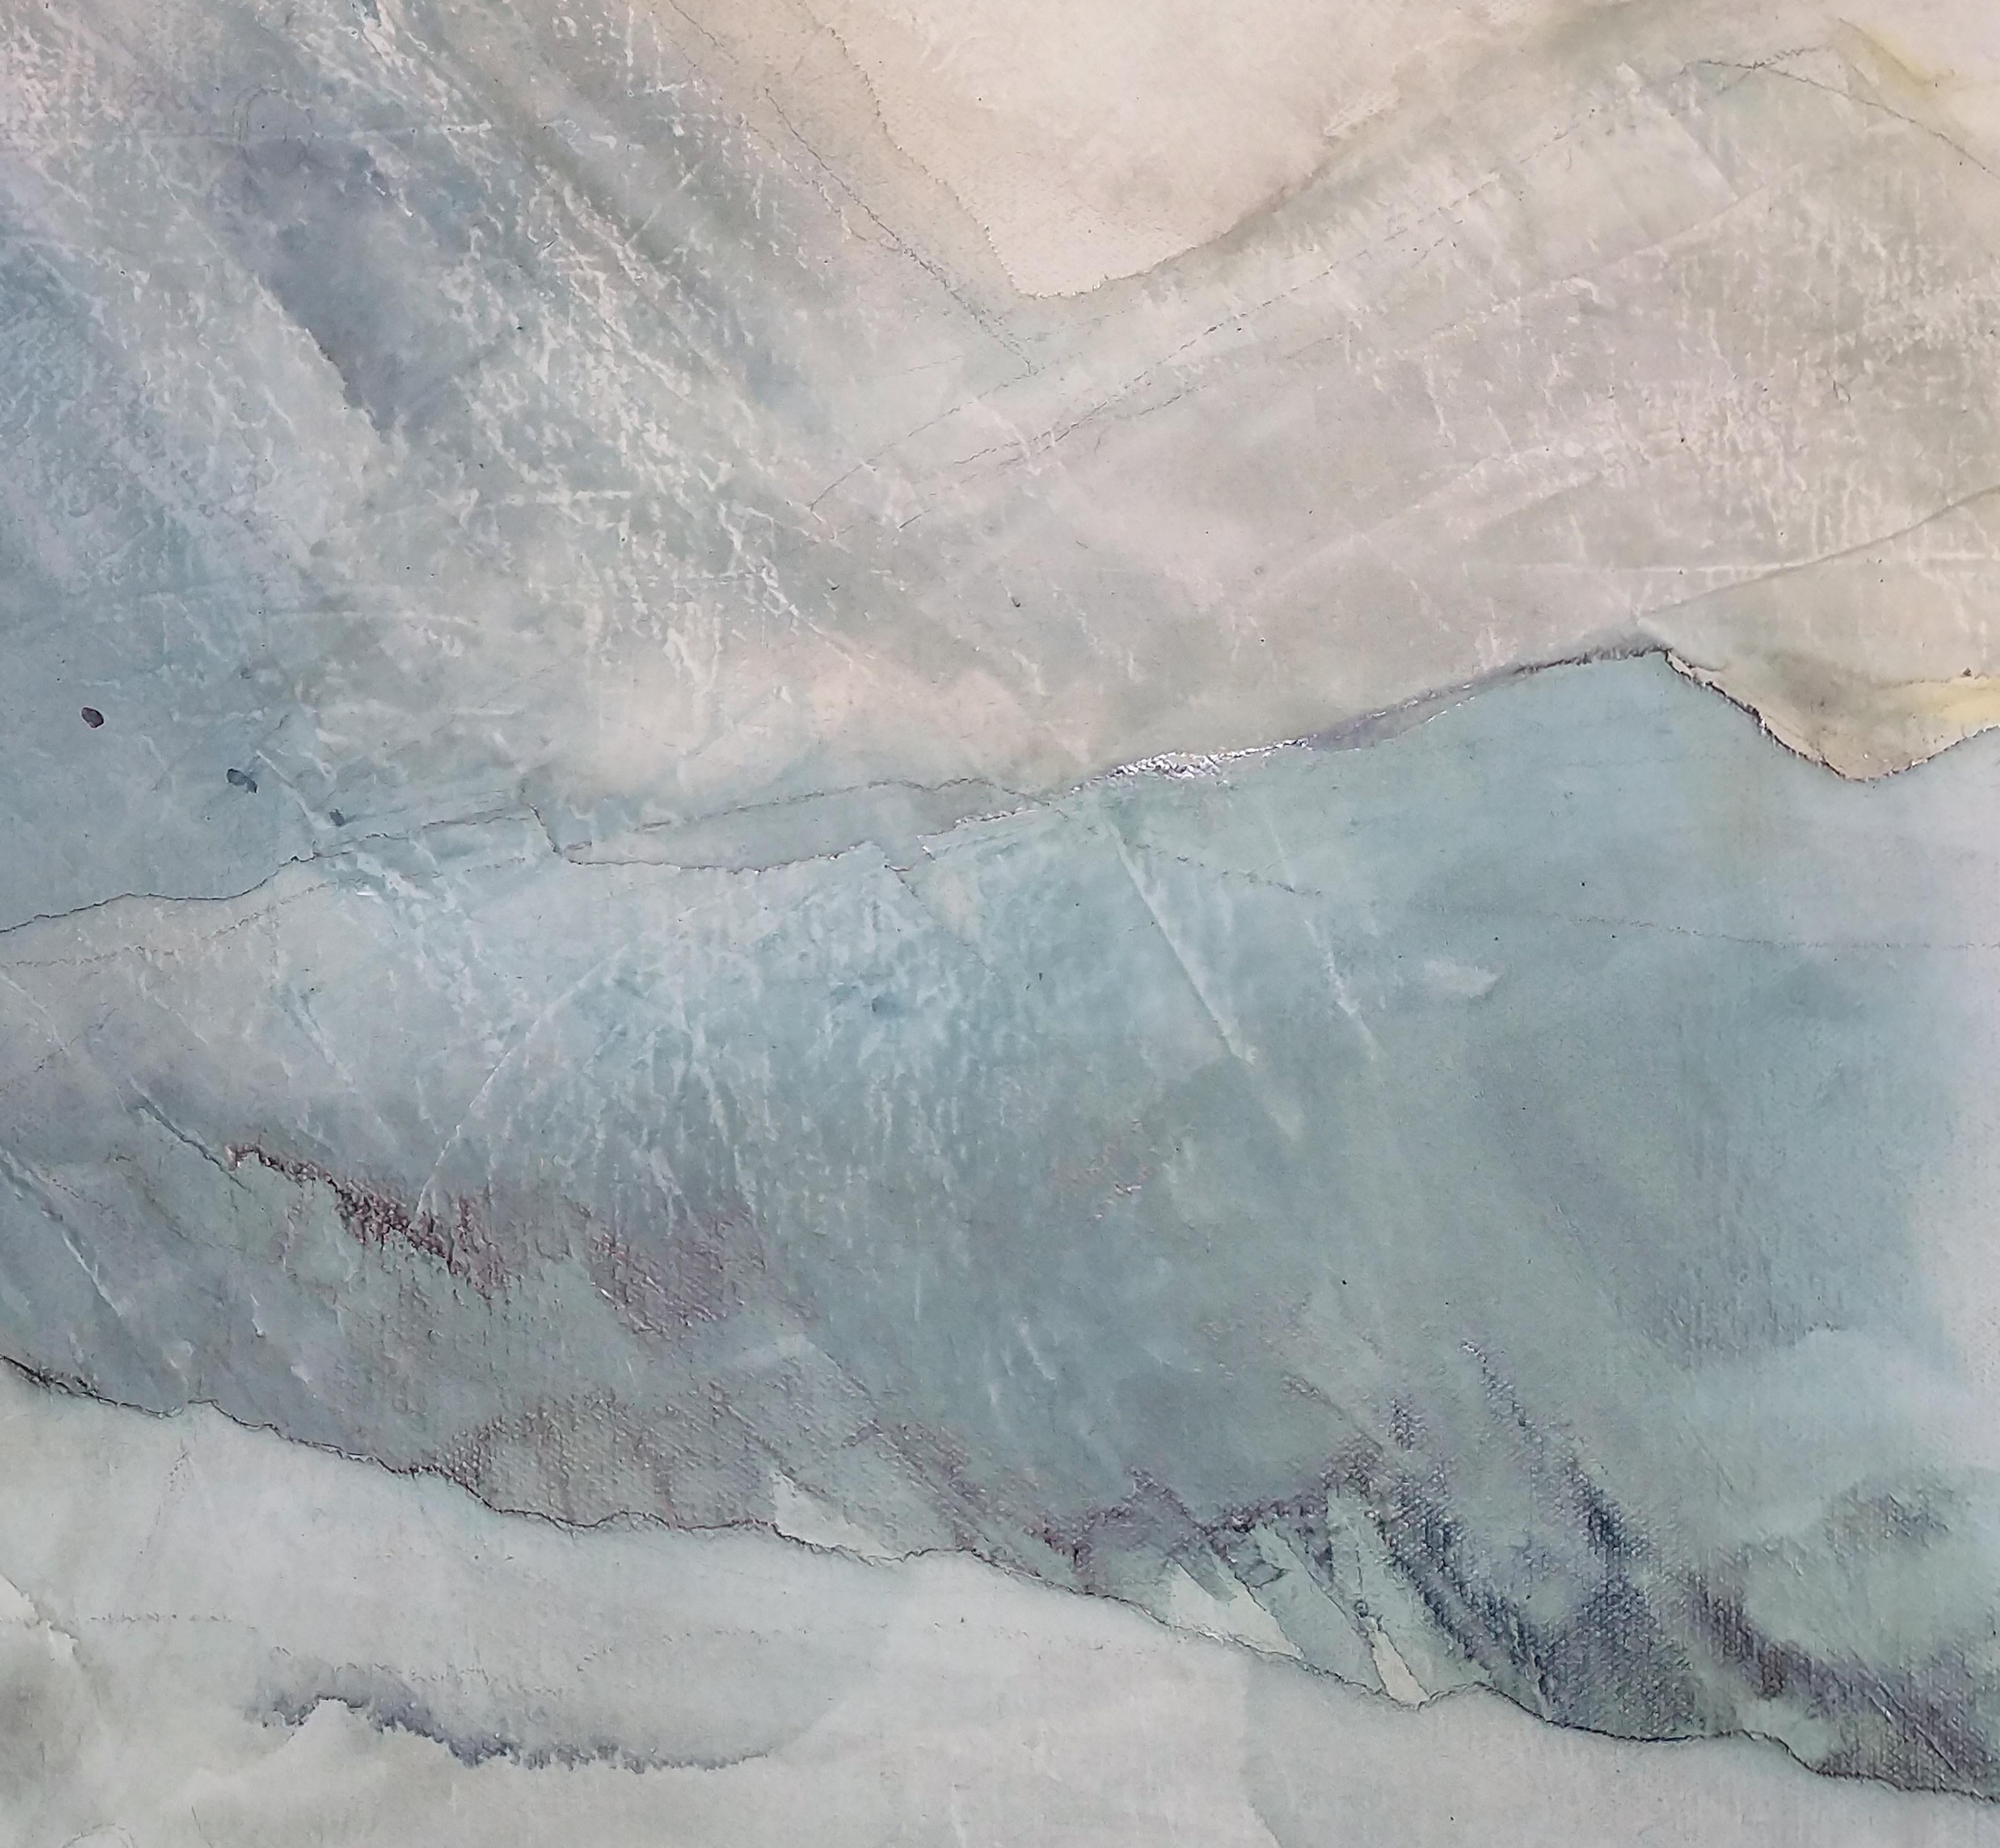 La tempête, peinture abstraite originale à l'encre sur toile, 2021 - Painting de KC Pollak